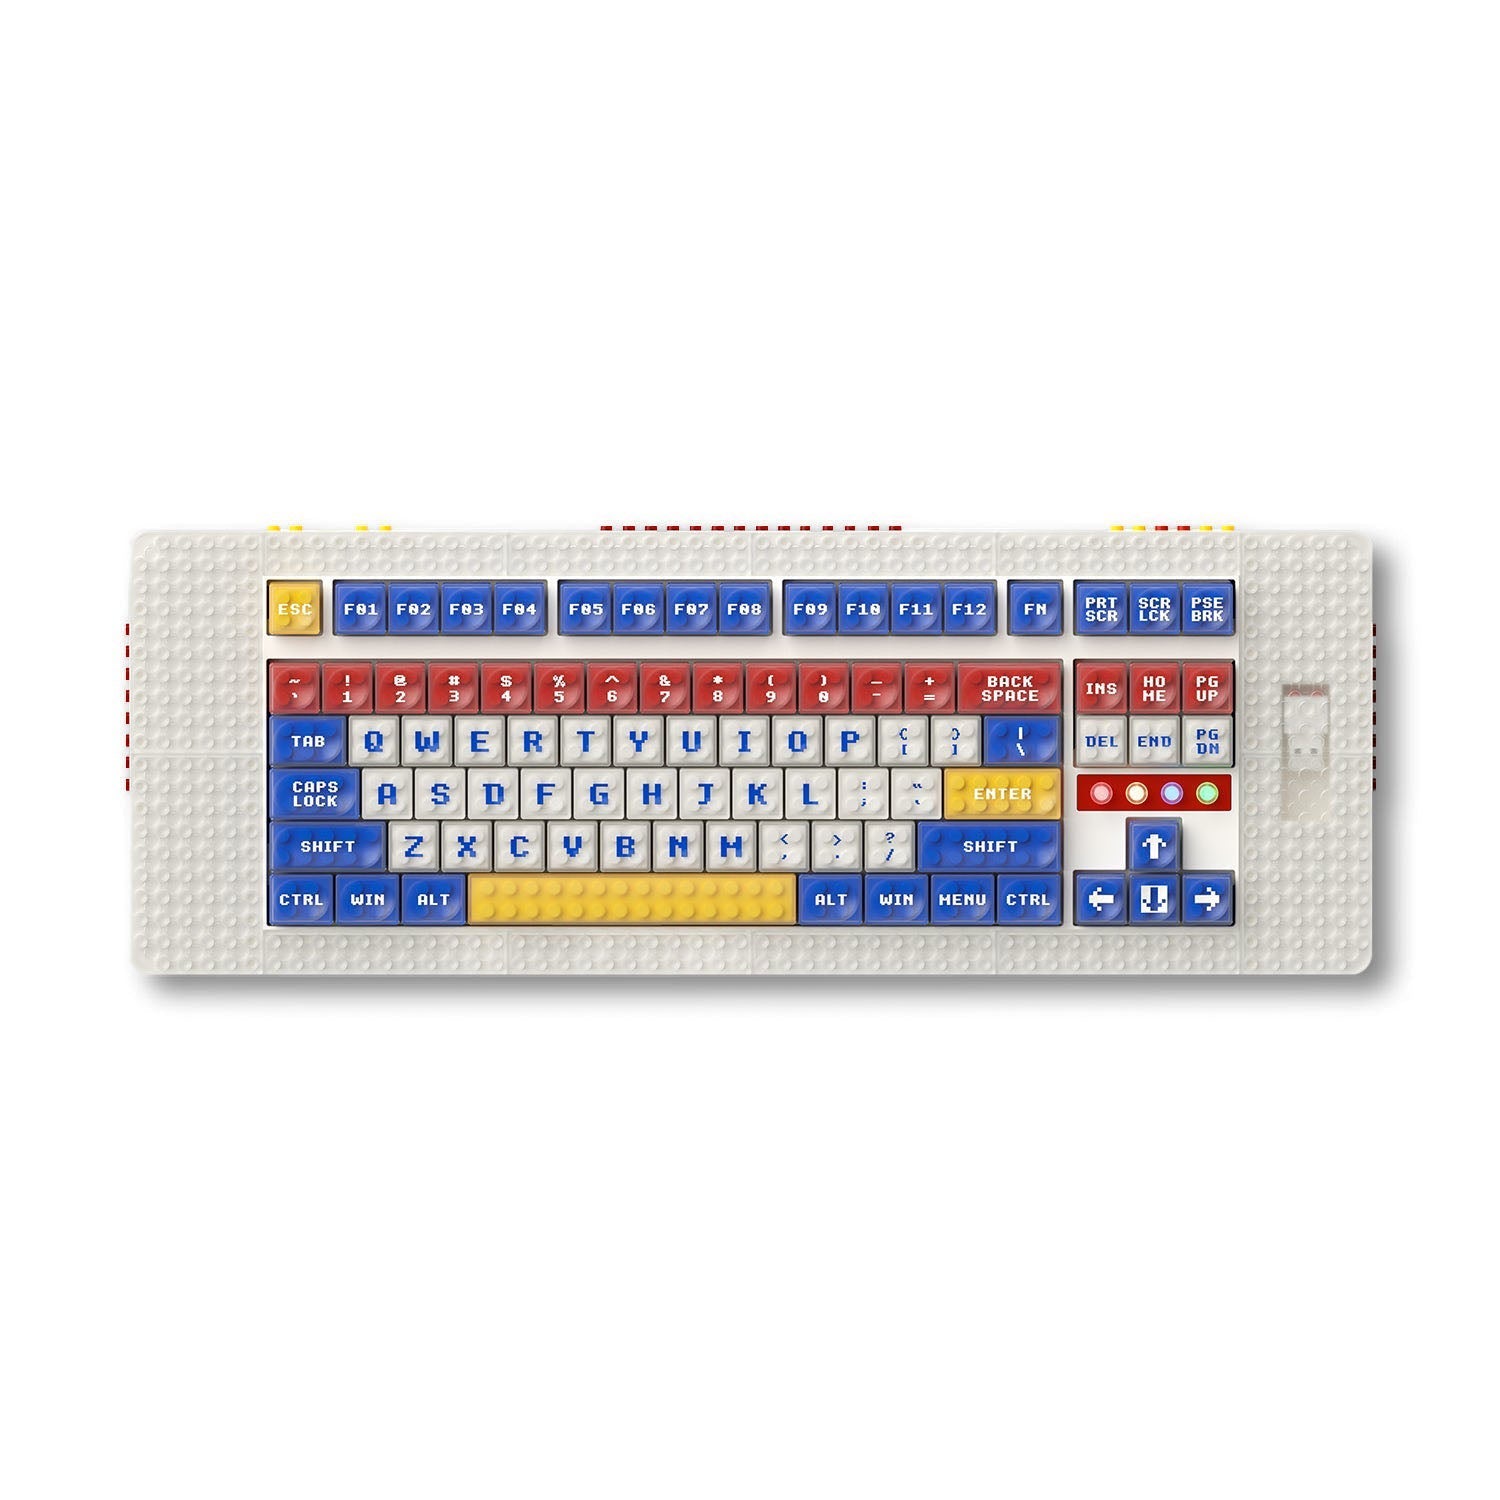 MelGeek Pixel, World's First Brick-compatible Custom Mechanical Keyboard